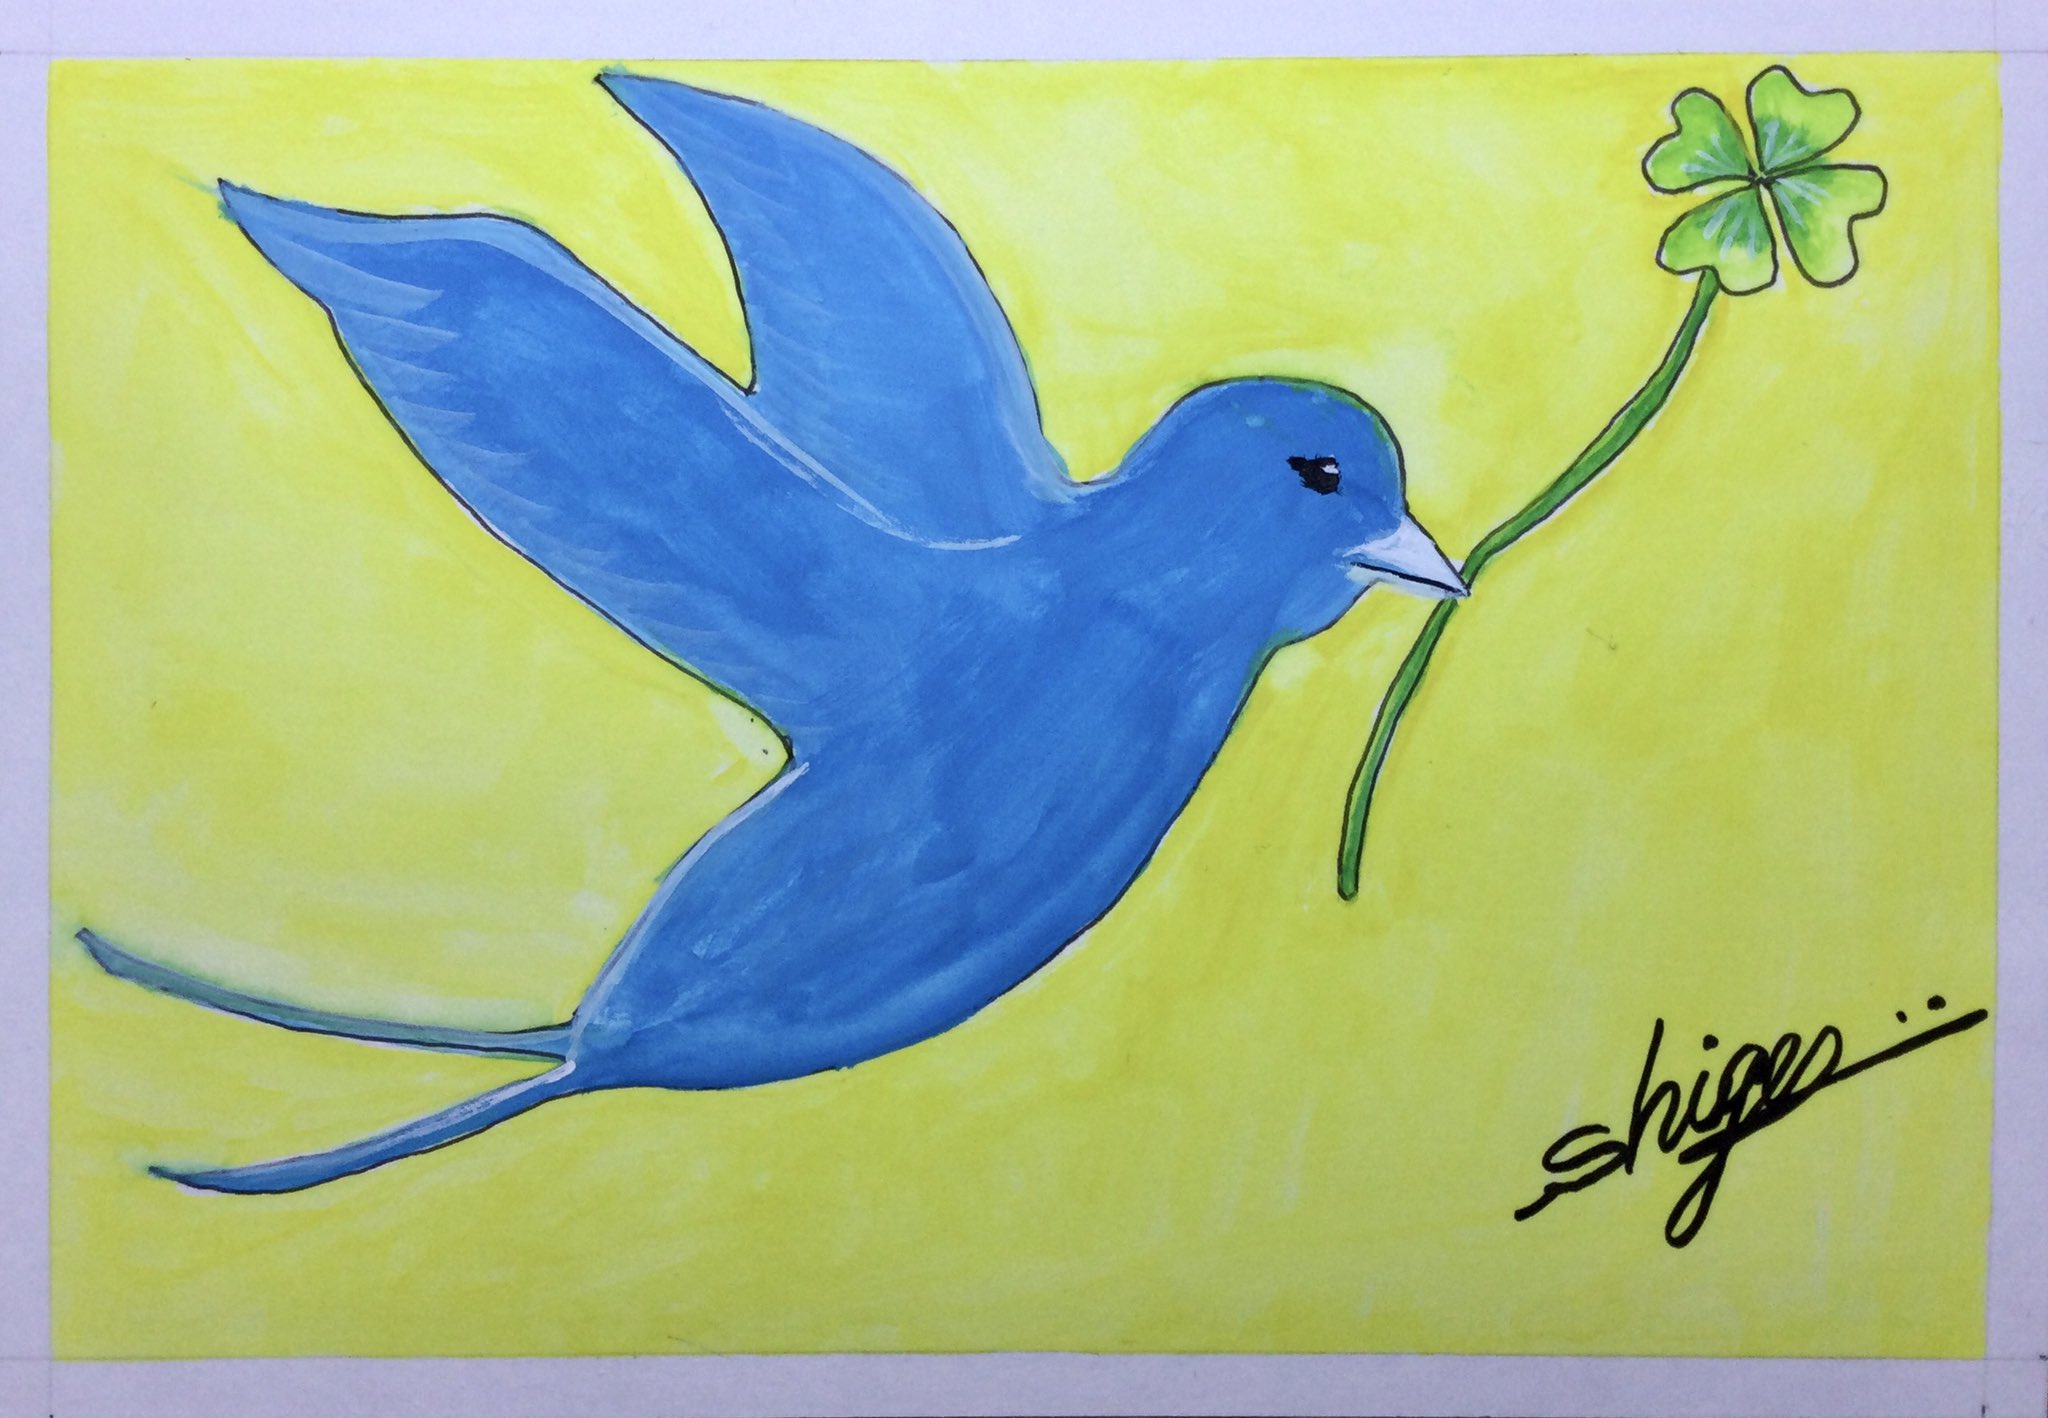 しげ兄 幸せを呼ぶ青い鳥 今朝は不透明水彩絵の具を使って 青い鳥のイラストを描いてみました 幸せを呼ぶ青い鳥 見た人みんなに幸せが訪れますように 不透明水彩画 イラスト 青い鳥 絵を描いている人と繋がりたい 絵が好きな人と繋がり